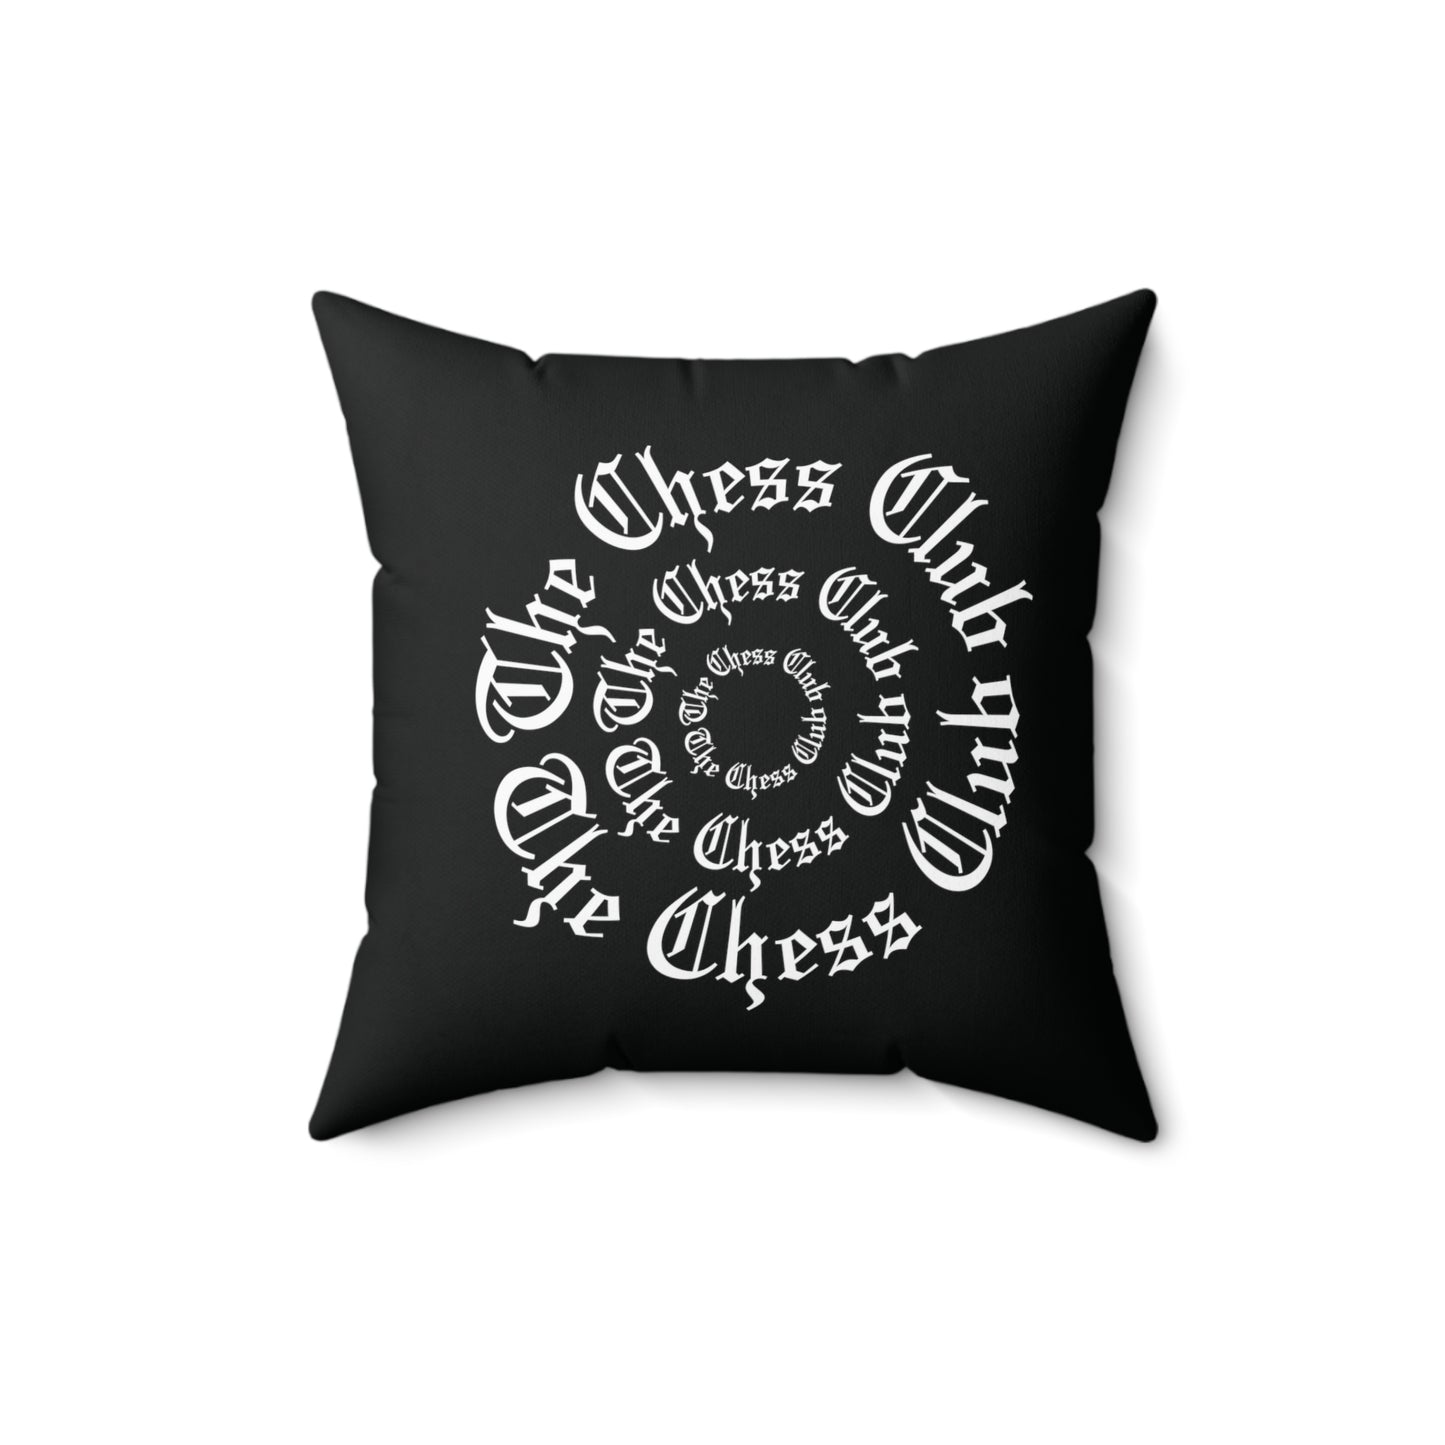 TheChessClub Pillow